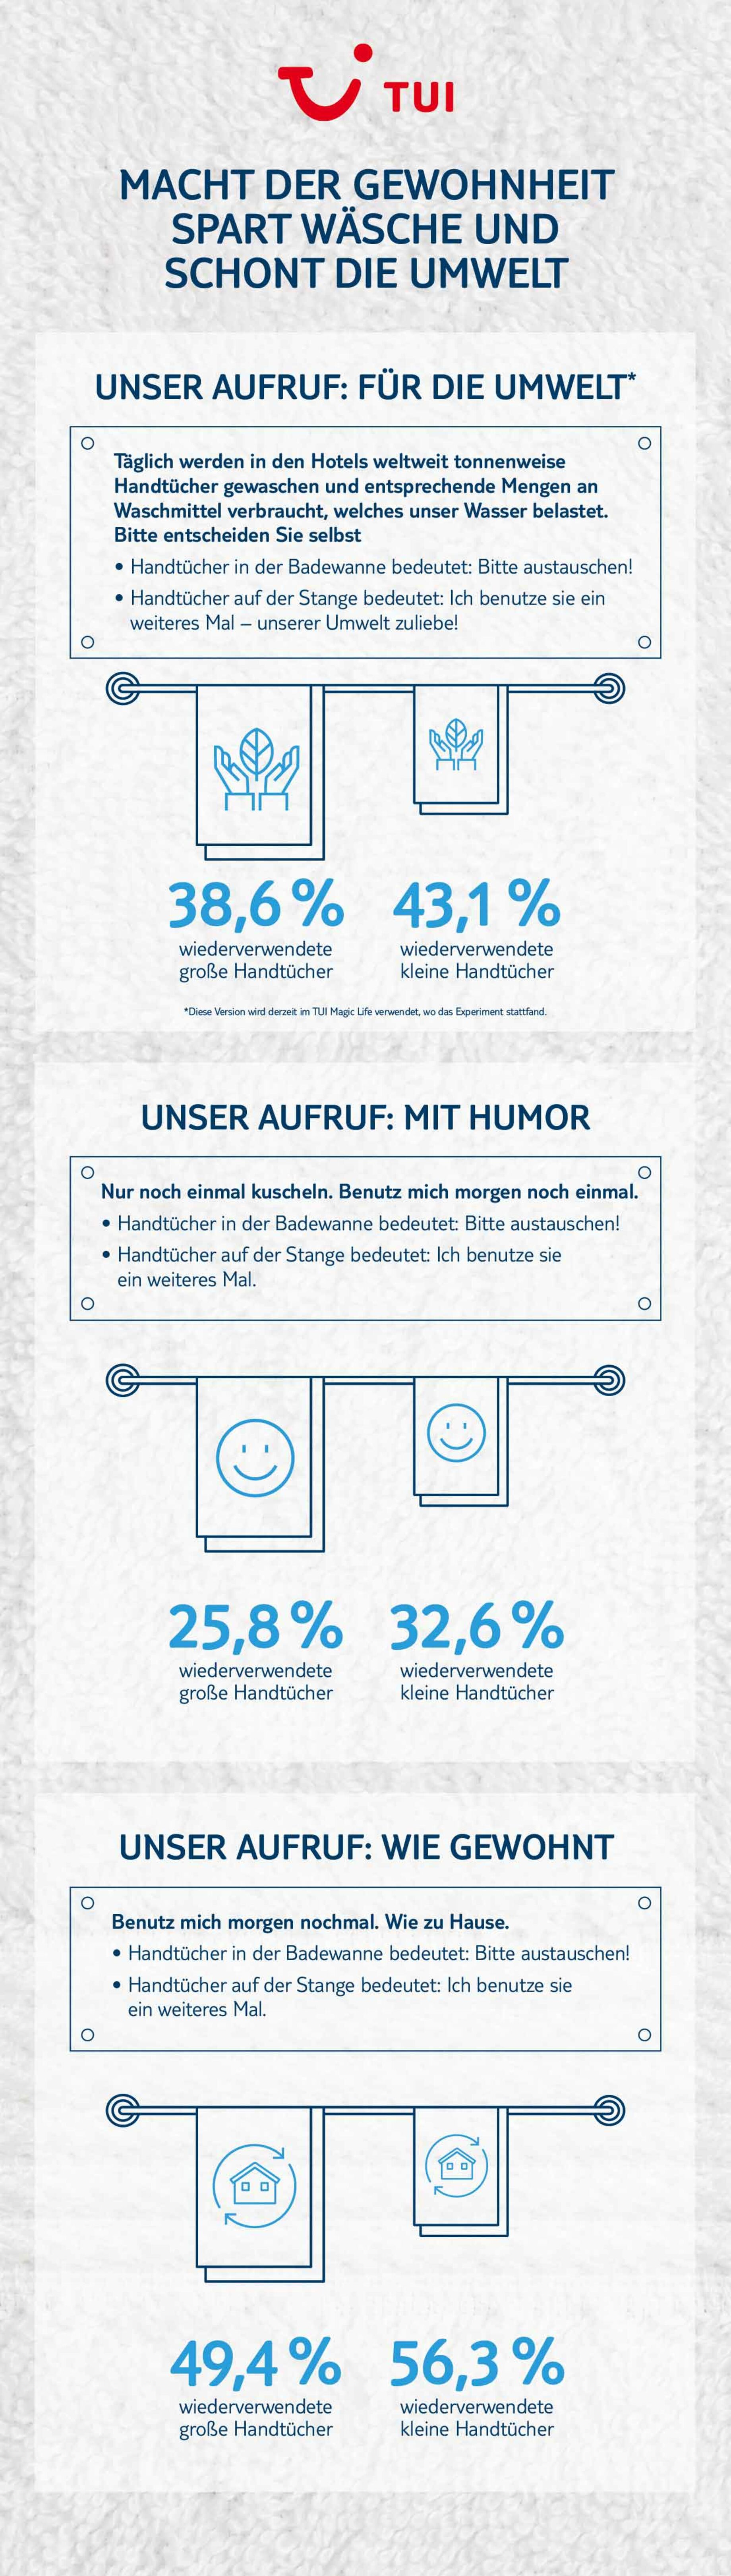 TUI_Infografik_Handtuchverbrauch_DE